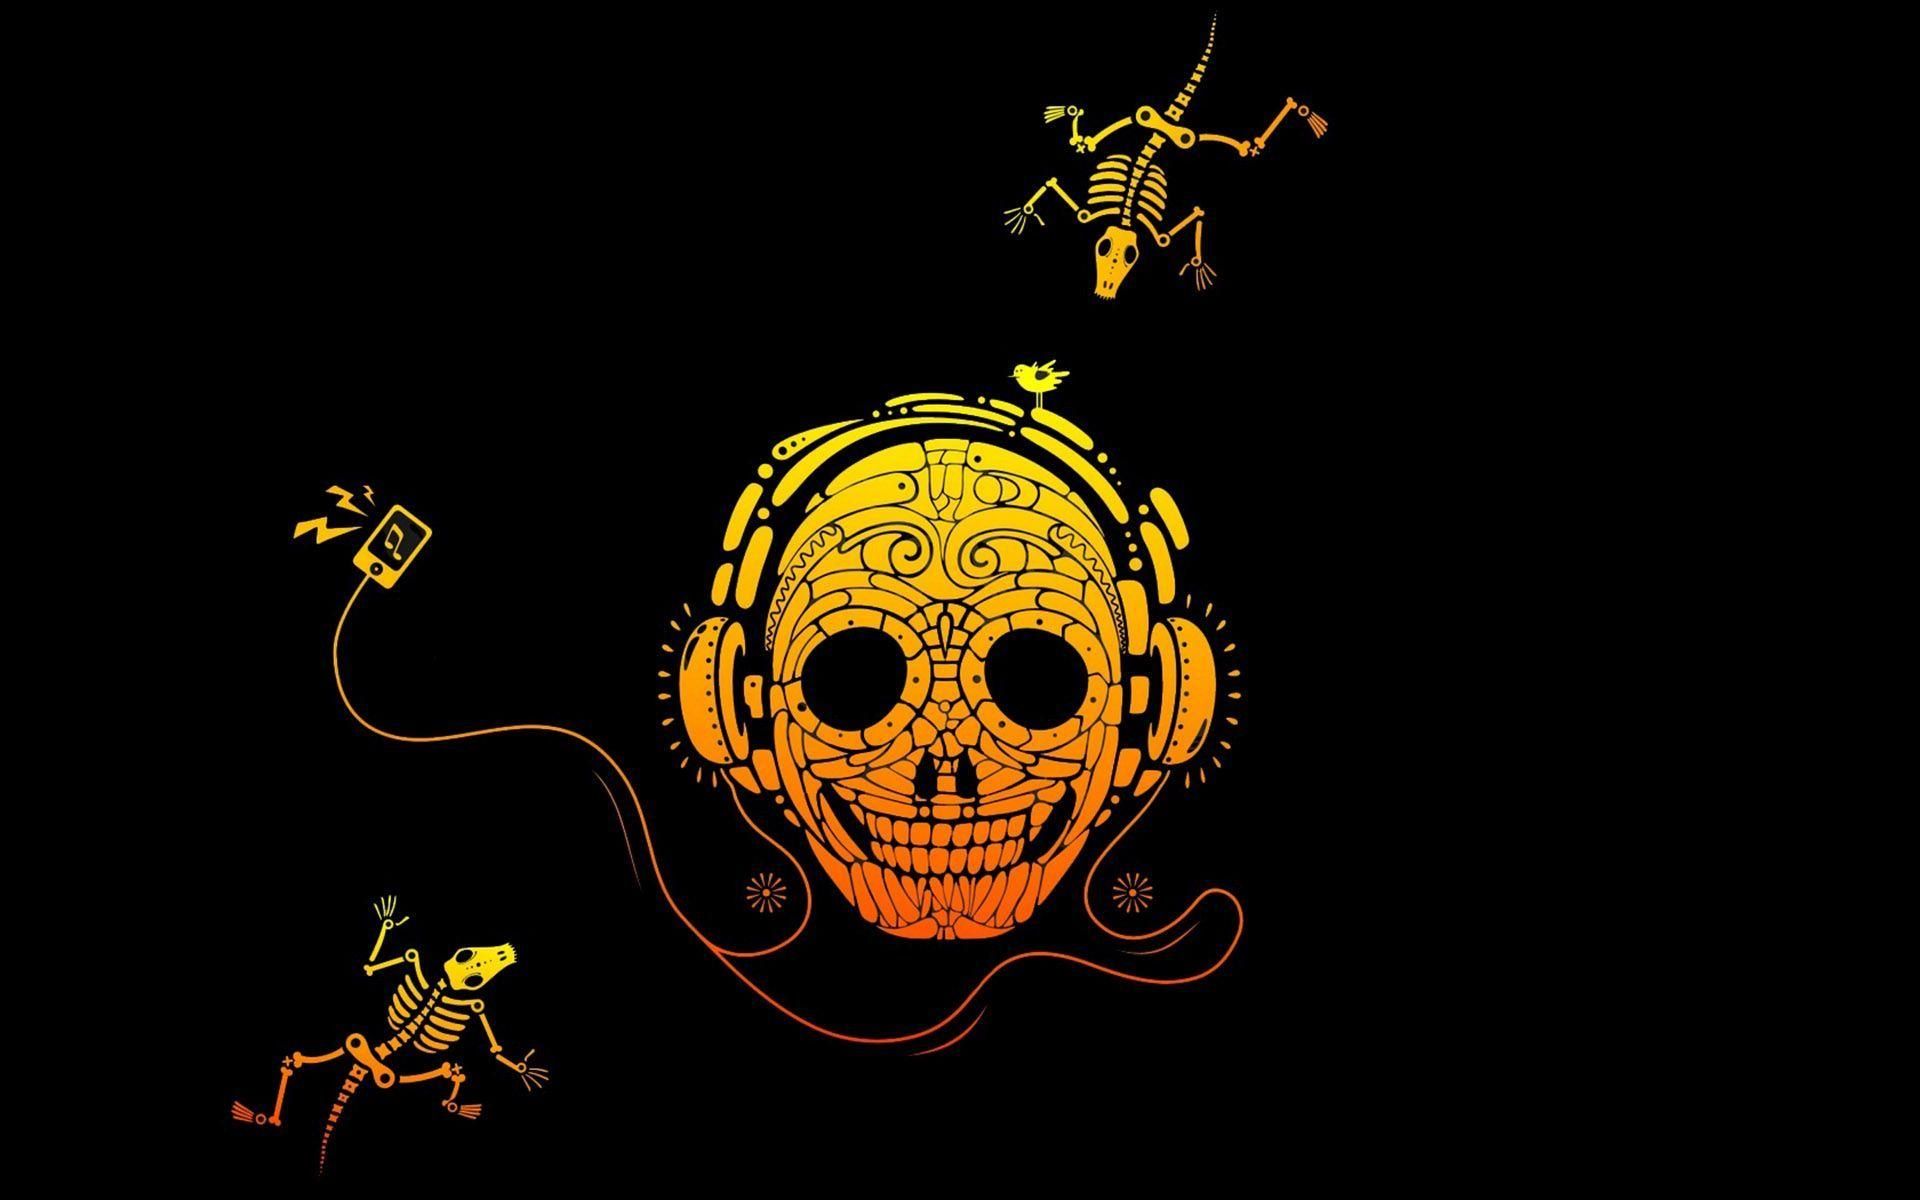 Skull with headphones on HD desktop wallpaper, Widescreen, High